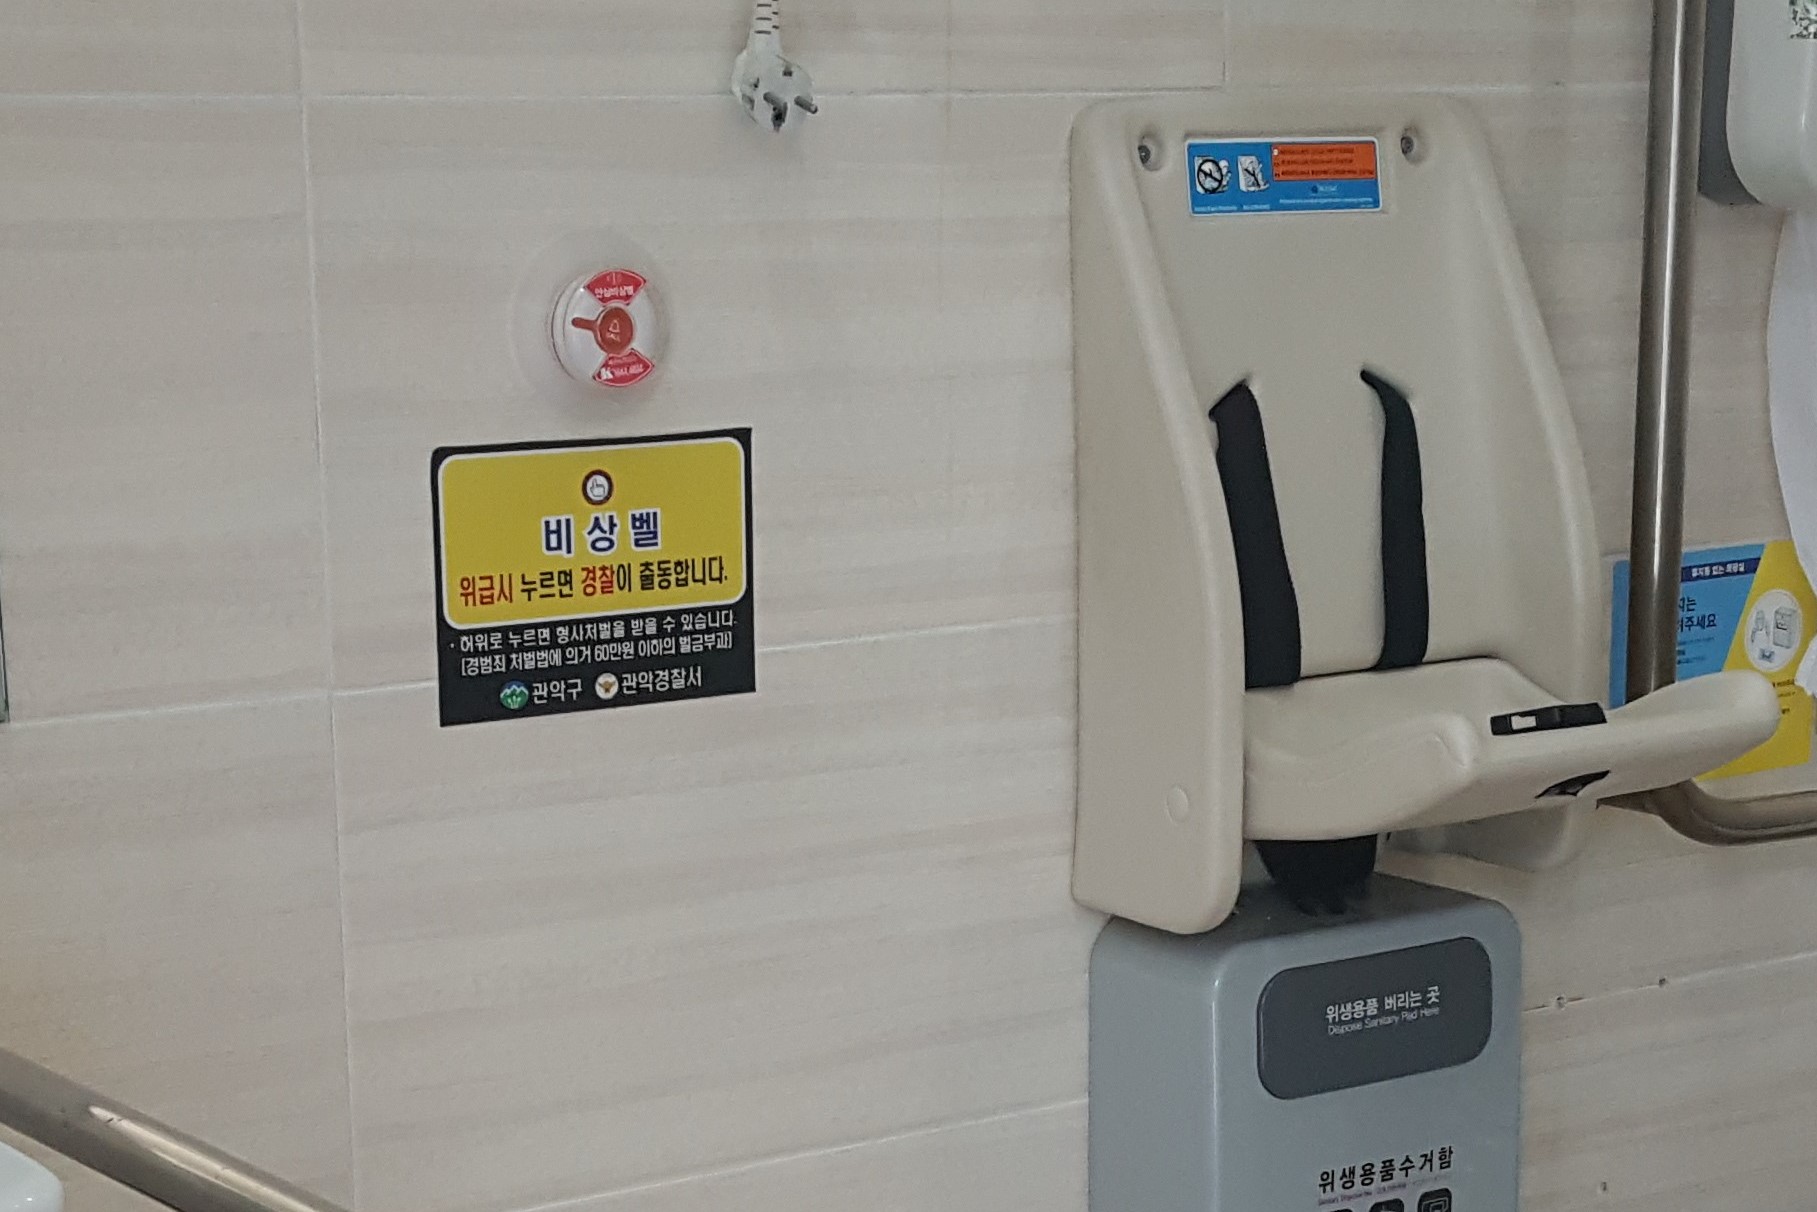 장애인화장실0 : 낙성대공원 장애인화장실 내부에 설치된 비상벨과 유아의자